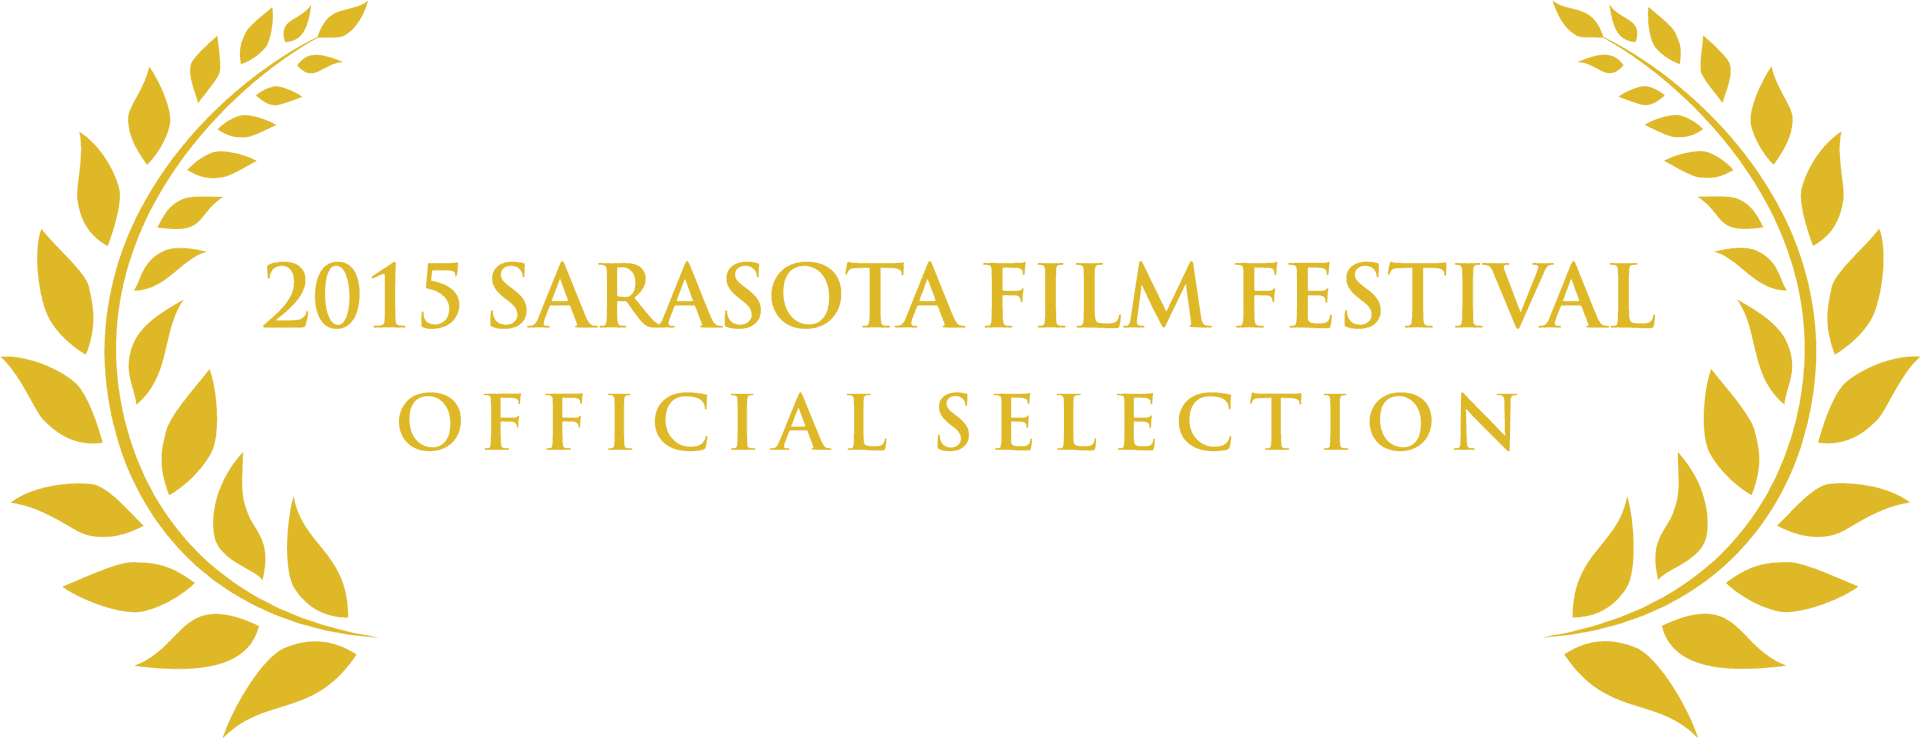 2015 Sarasota Film Festival Official Selection Badge PNG image